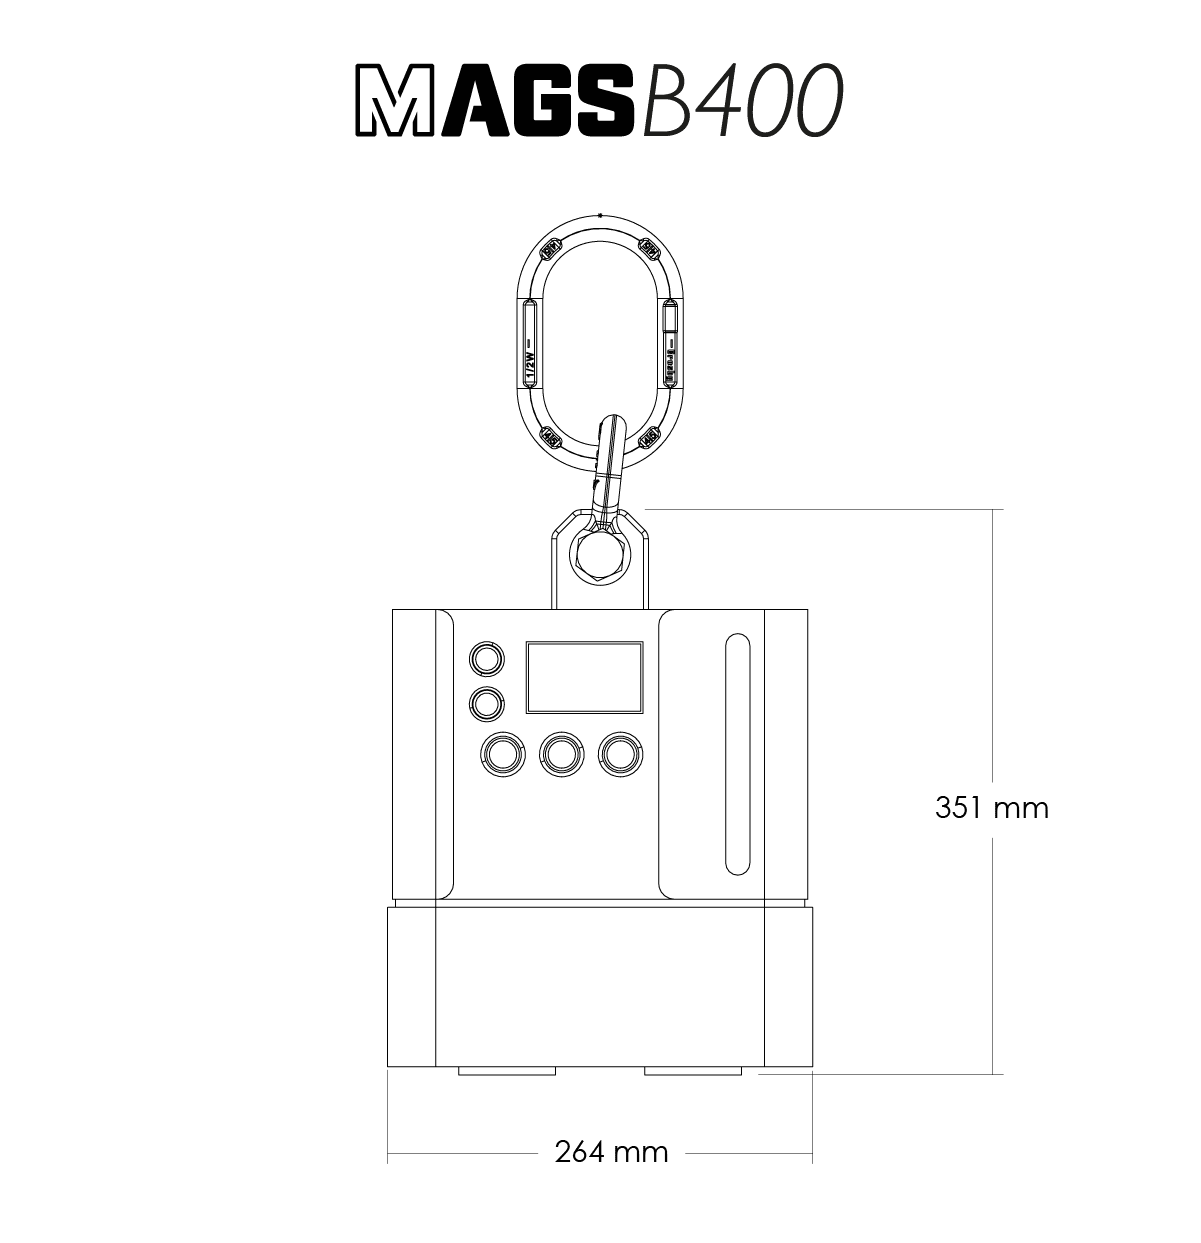 MAGS B400 datasheet